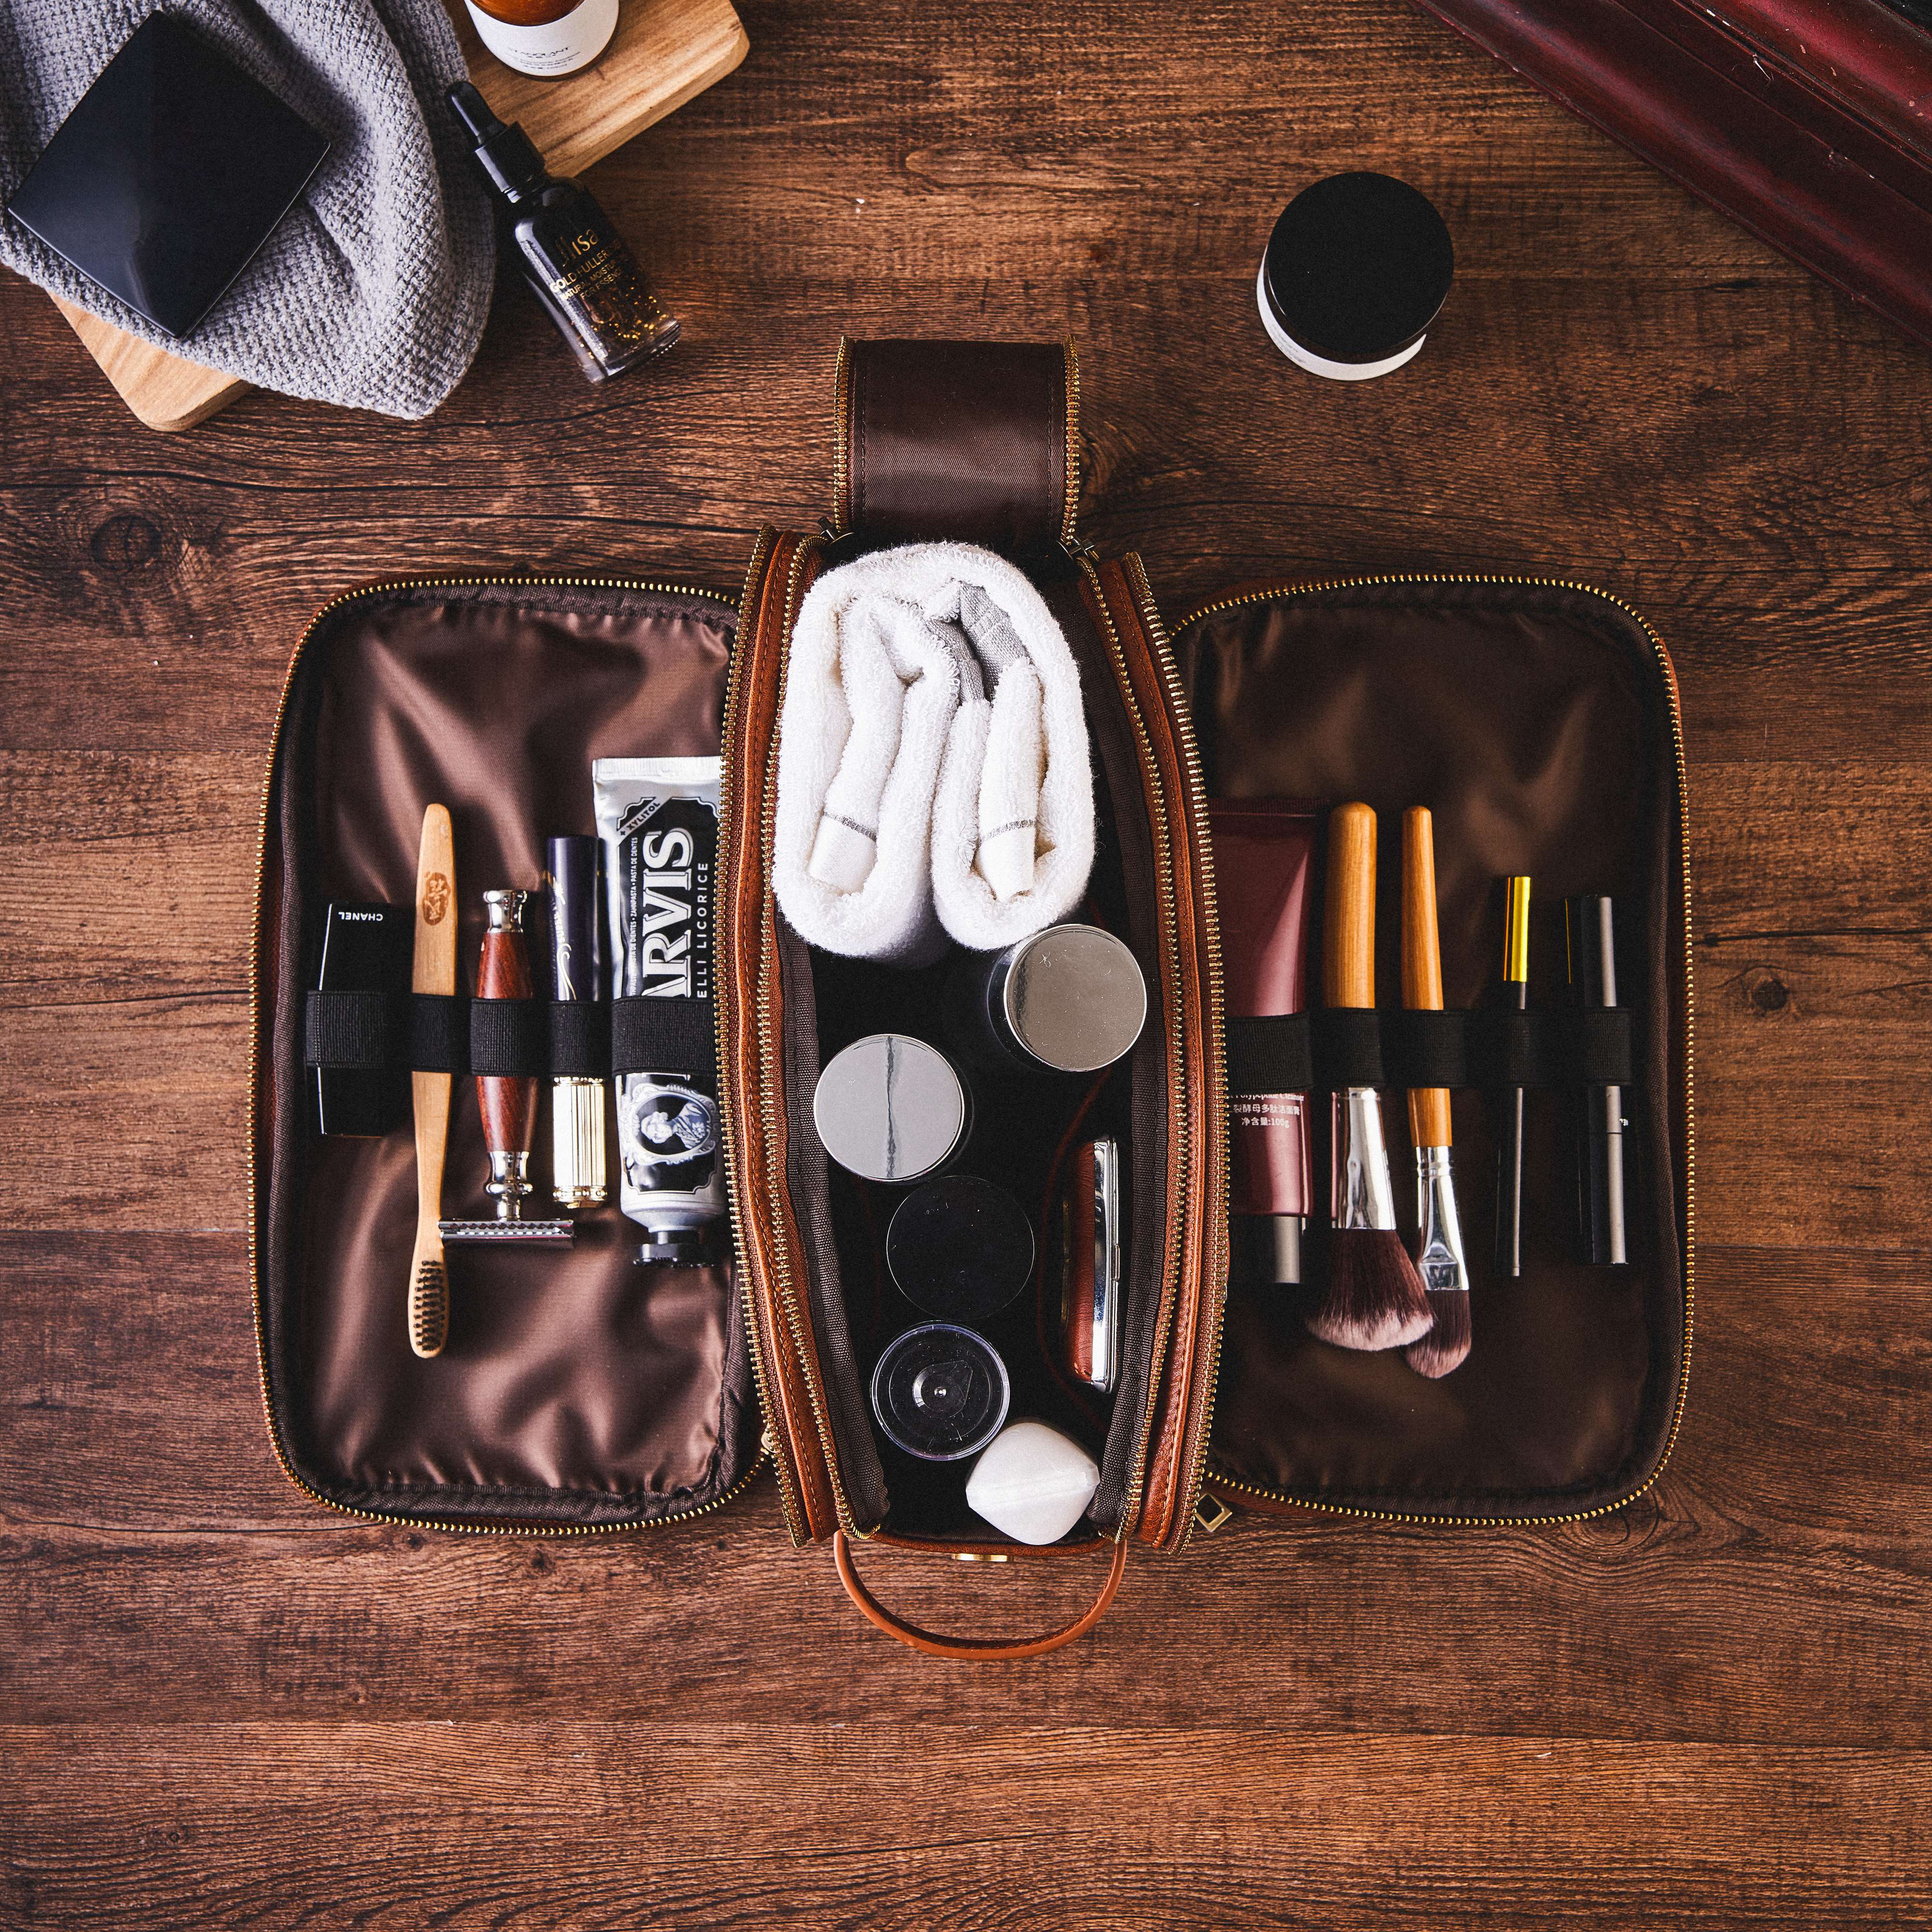 Personalized Toiletry Bag Groomsmen Gift, Dopp Kit,Travel Shaving